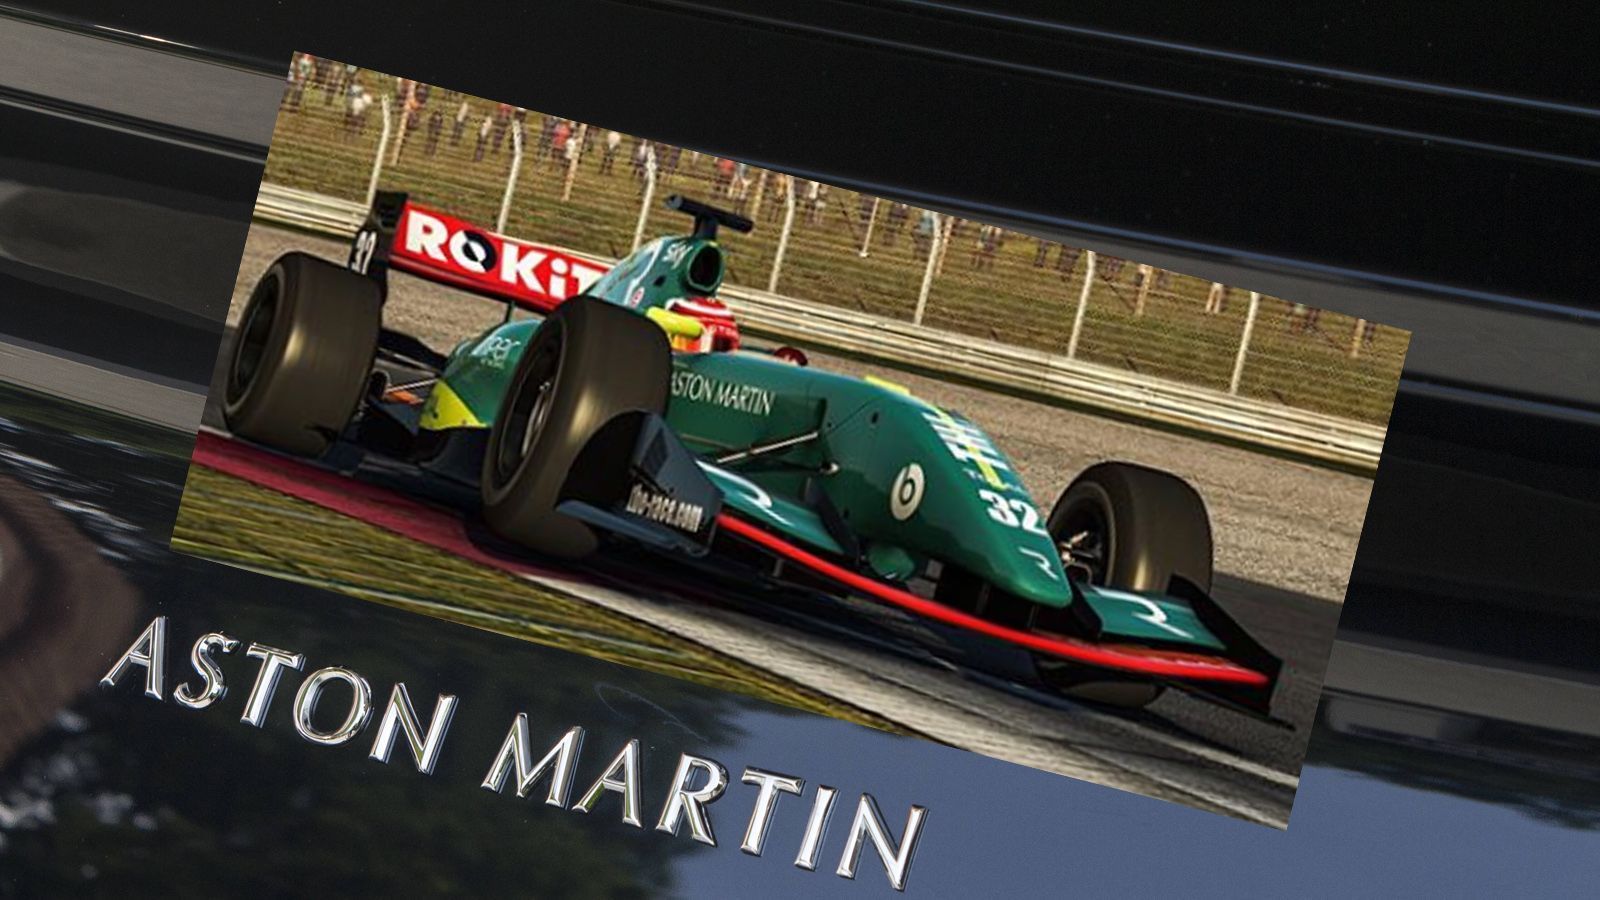 
                <strong>Design noch nicht bekannt</strong><br>
                Wie der Formel-1-Wagen von Aston Martin 2021 aussehen wird, ist bislang noch nicht bekannt. Im eSport ist die Marke jedenfalls mit einem grünen Rennboliden unterwegs. Gut möglich, dass das Design in der Formel 1 ähnlich sein wird.
              